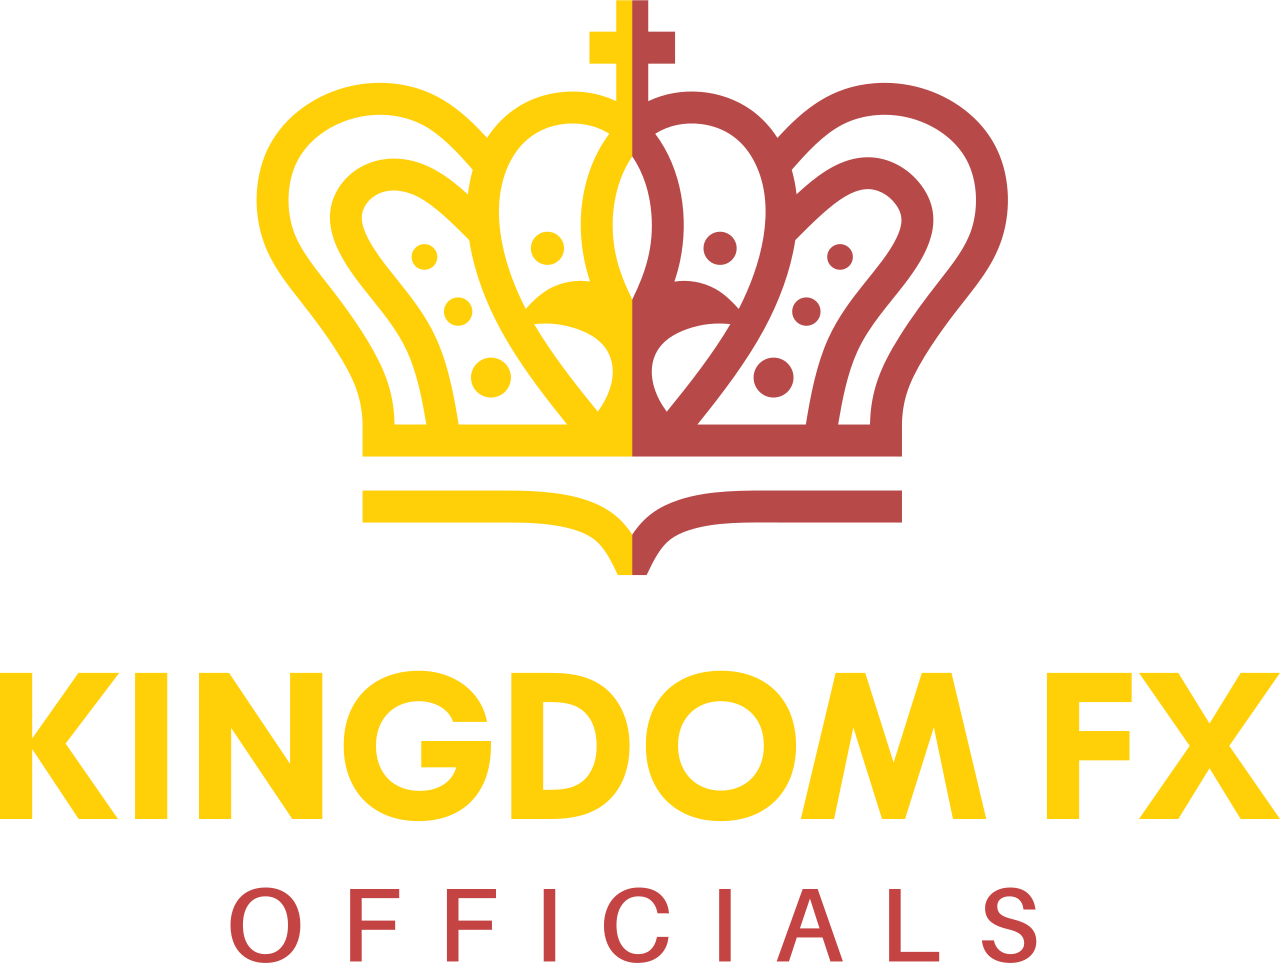 KINGDOM FX's logo